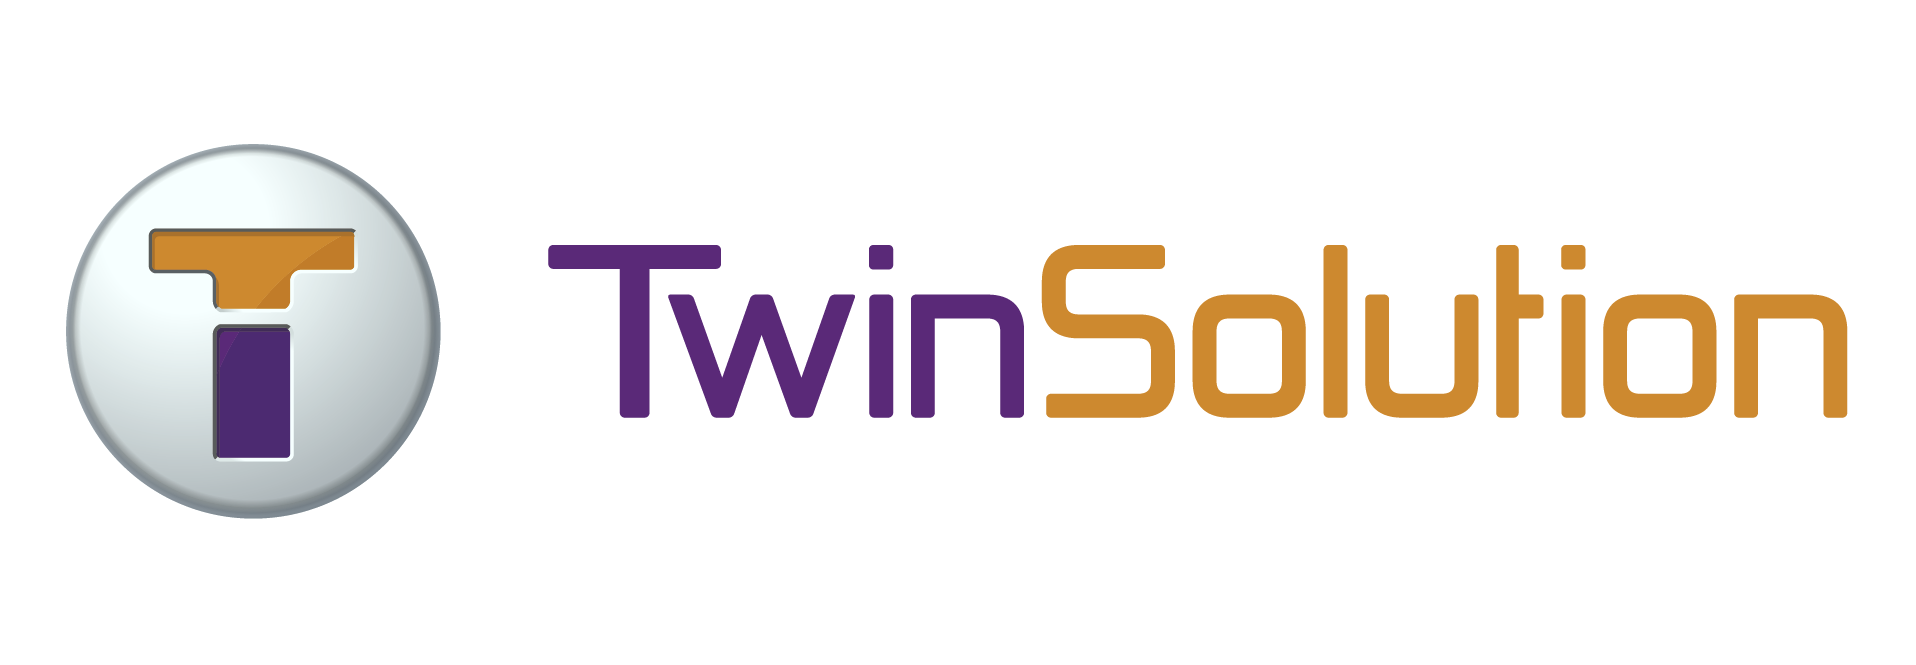 Twinsolution Technology (Suzhou) Ltd.